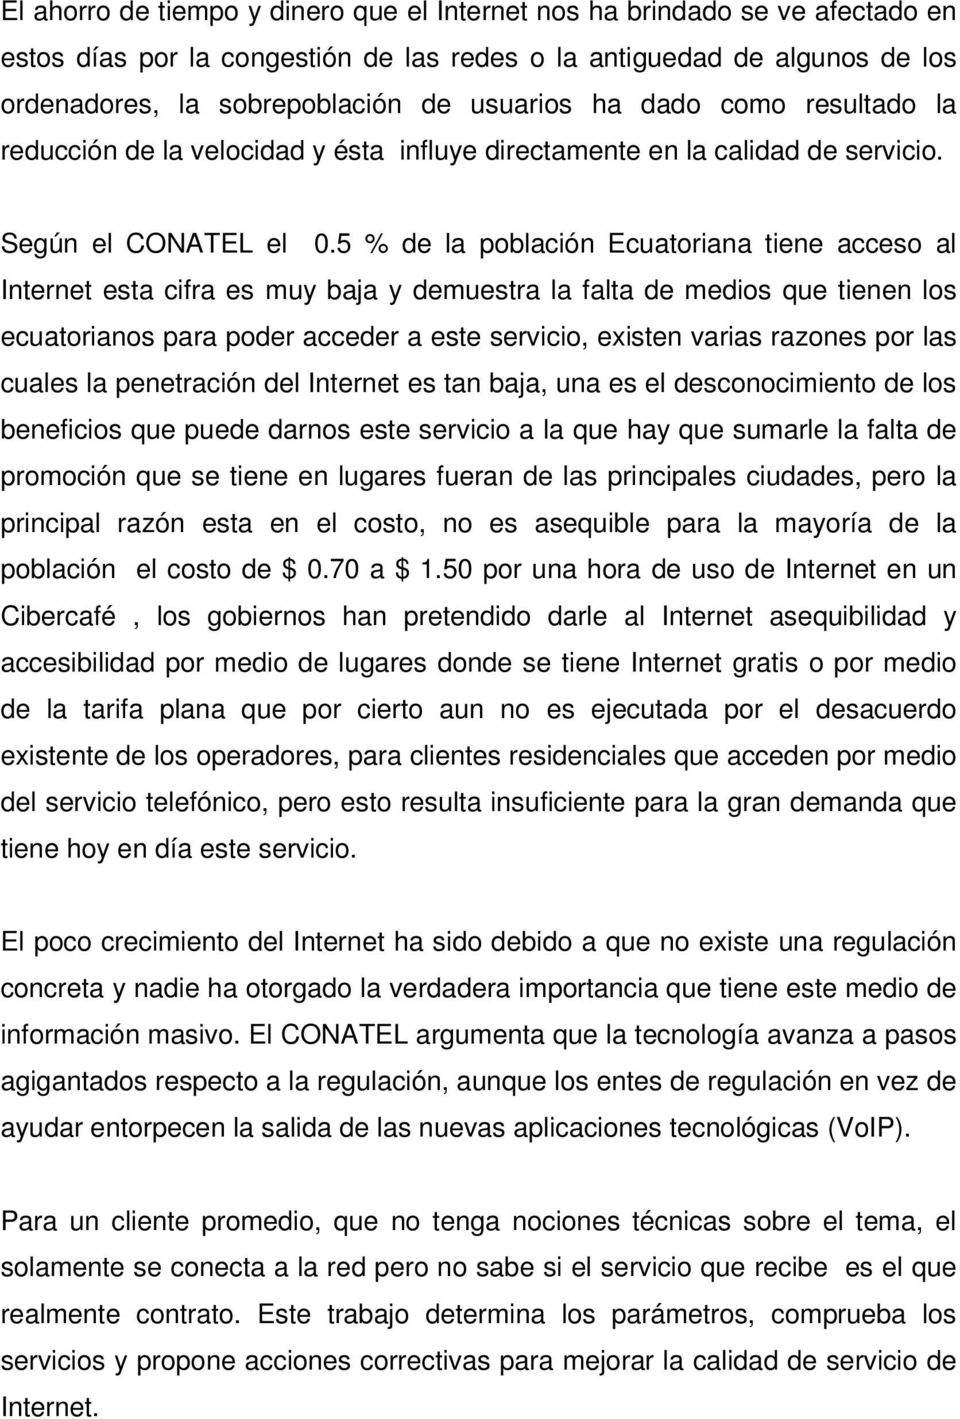 5 % de la población Ecuatoriana tiene acceso al Internet esta cifra es muy baja y demuestra la falta de medios que tienen los ecuatorianos para poder acceder a este servicio, existen varias razones